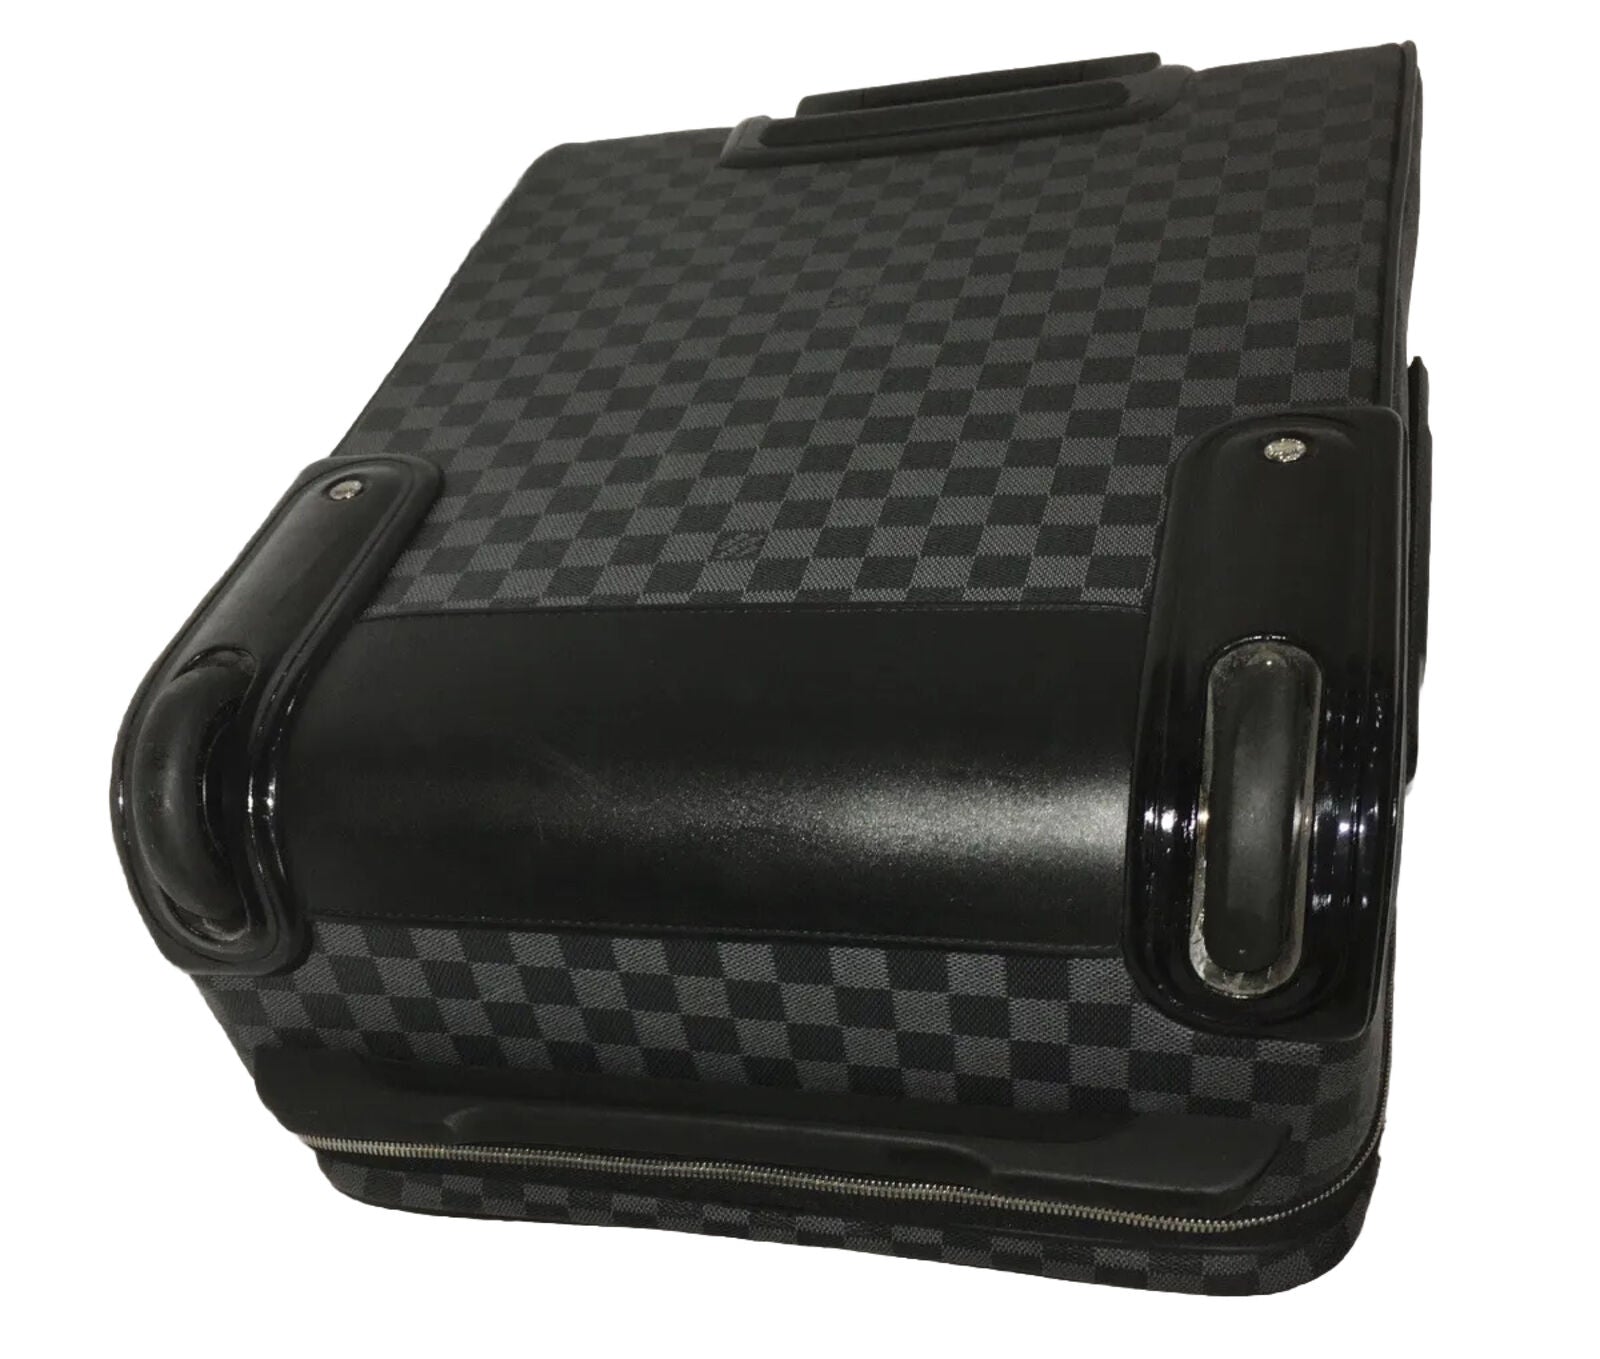 Louis Vuitton Business Pegase 55 Damier Graphite Silvertone Unisex Suitcase 🩵